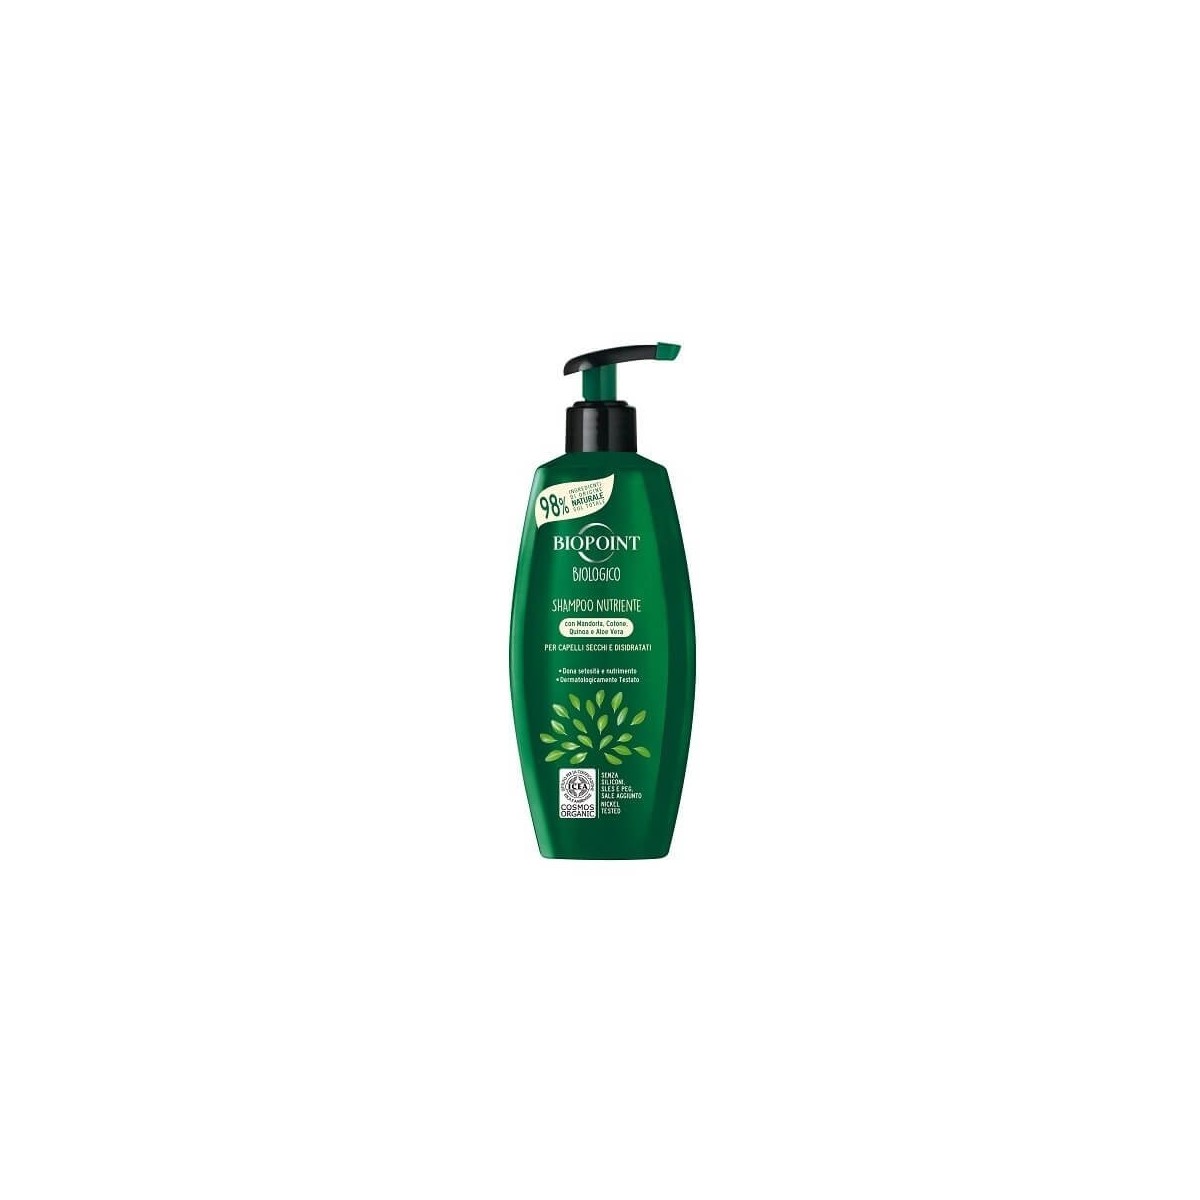 Biopoint Biologico Shampoo Nutriente 250ml